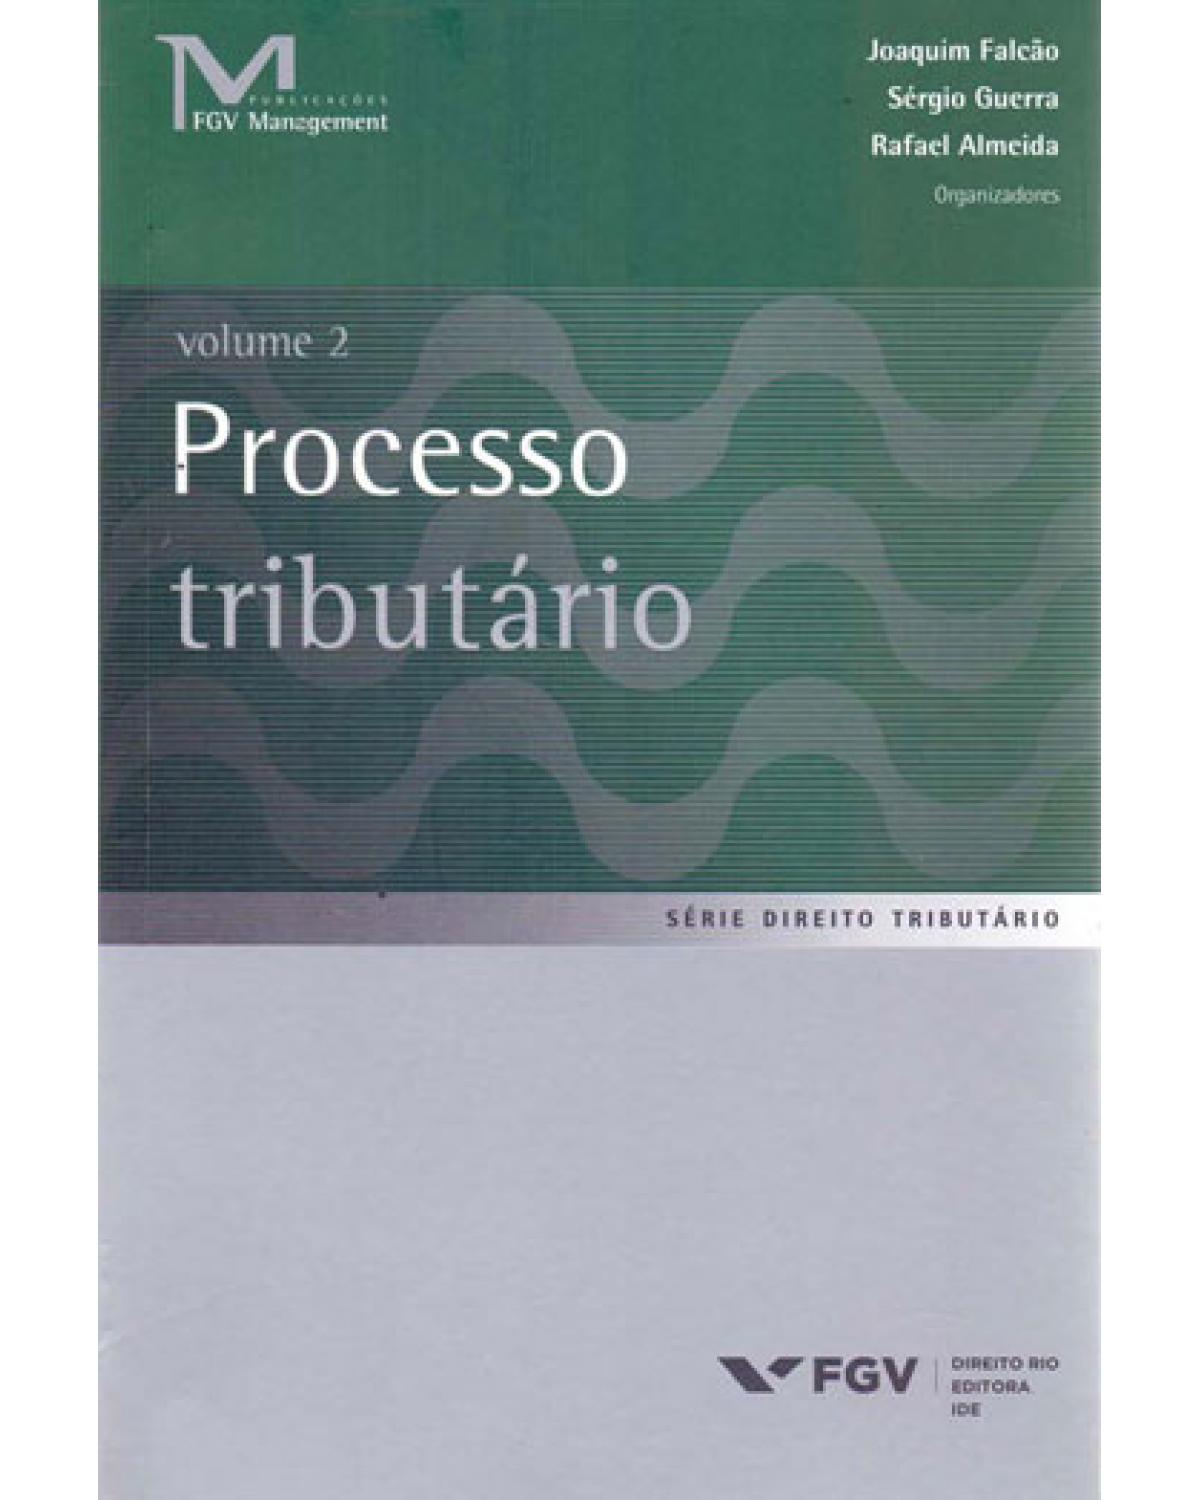 Processo tributário- Volume 1 - 1ª Edição